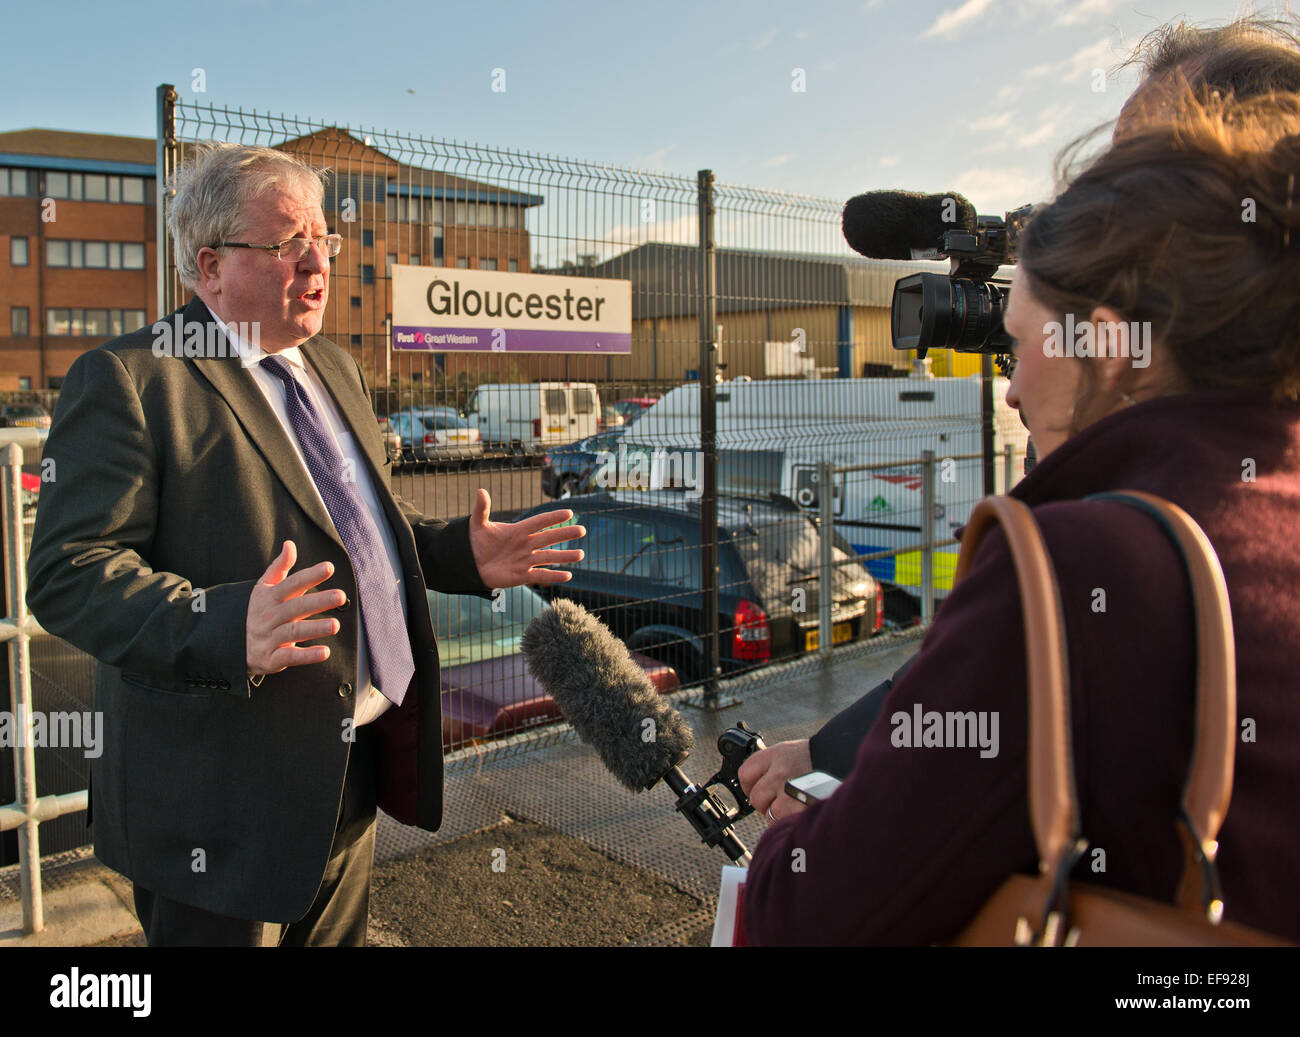 Gloucester, Royaume-Uni. 29 janvier, 2015. Ministre des Transports Patrick McLoughlin fait une visite ministérielle à la gare de Gloucester. Crédit : charlie bryan/Alamy Live News Banque D'Images